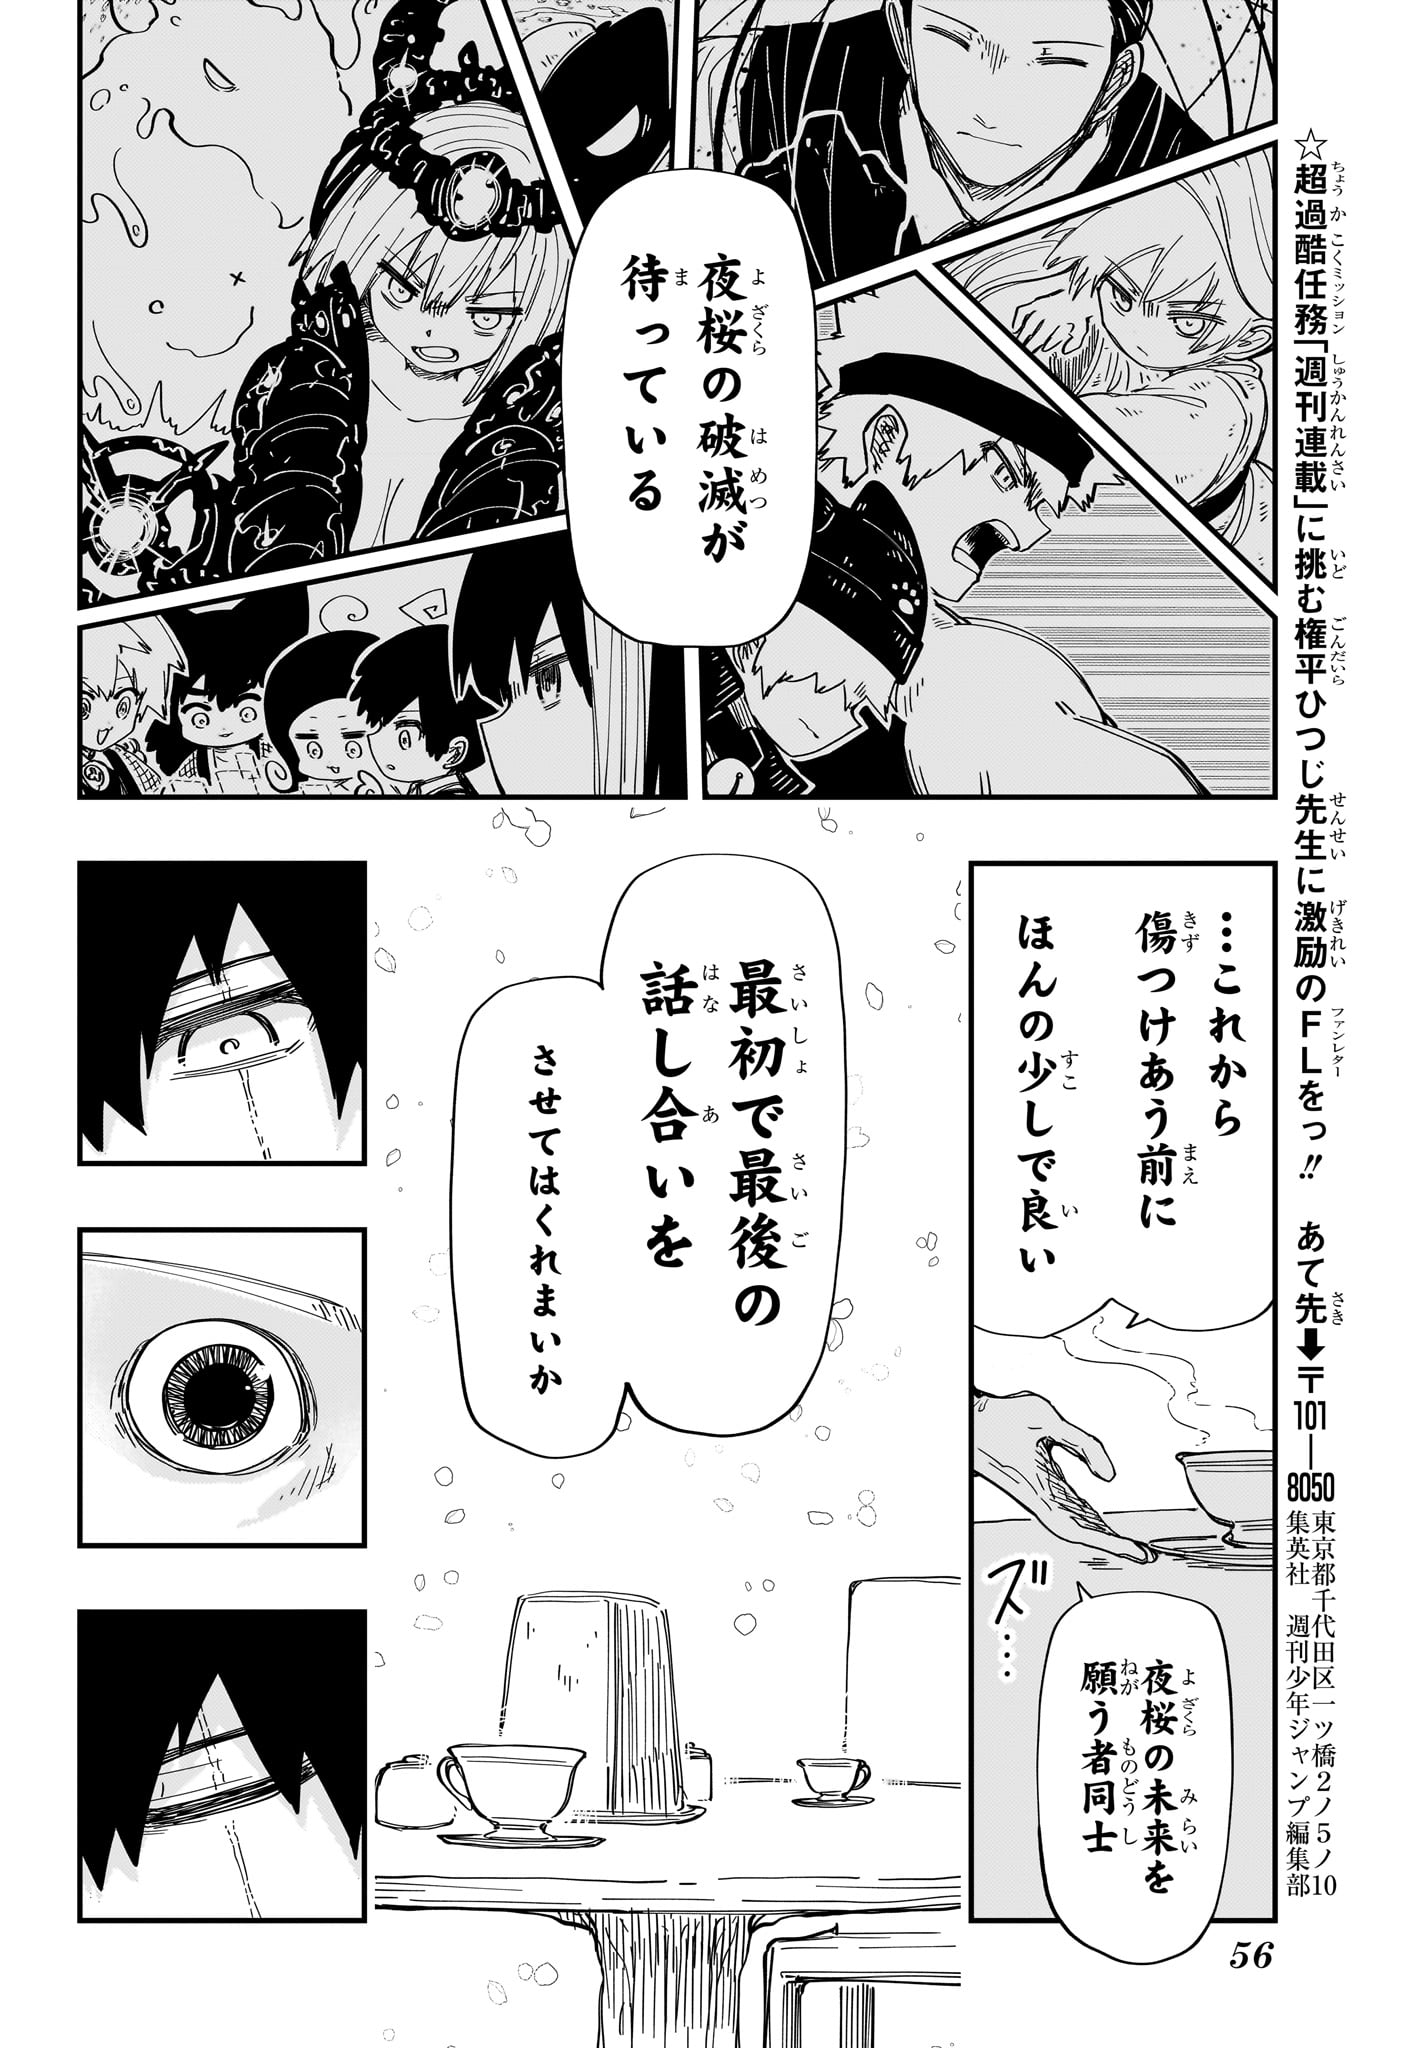 Yozakura-san Chi no Daisakusen - Chapter 229 - Page 18